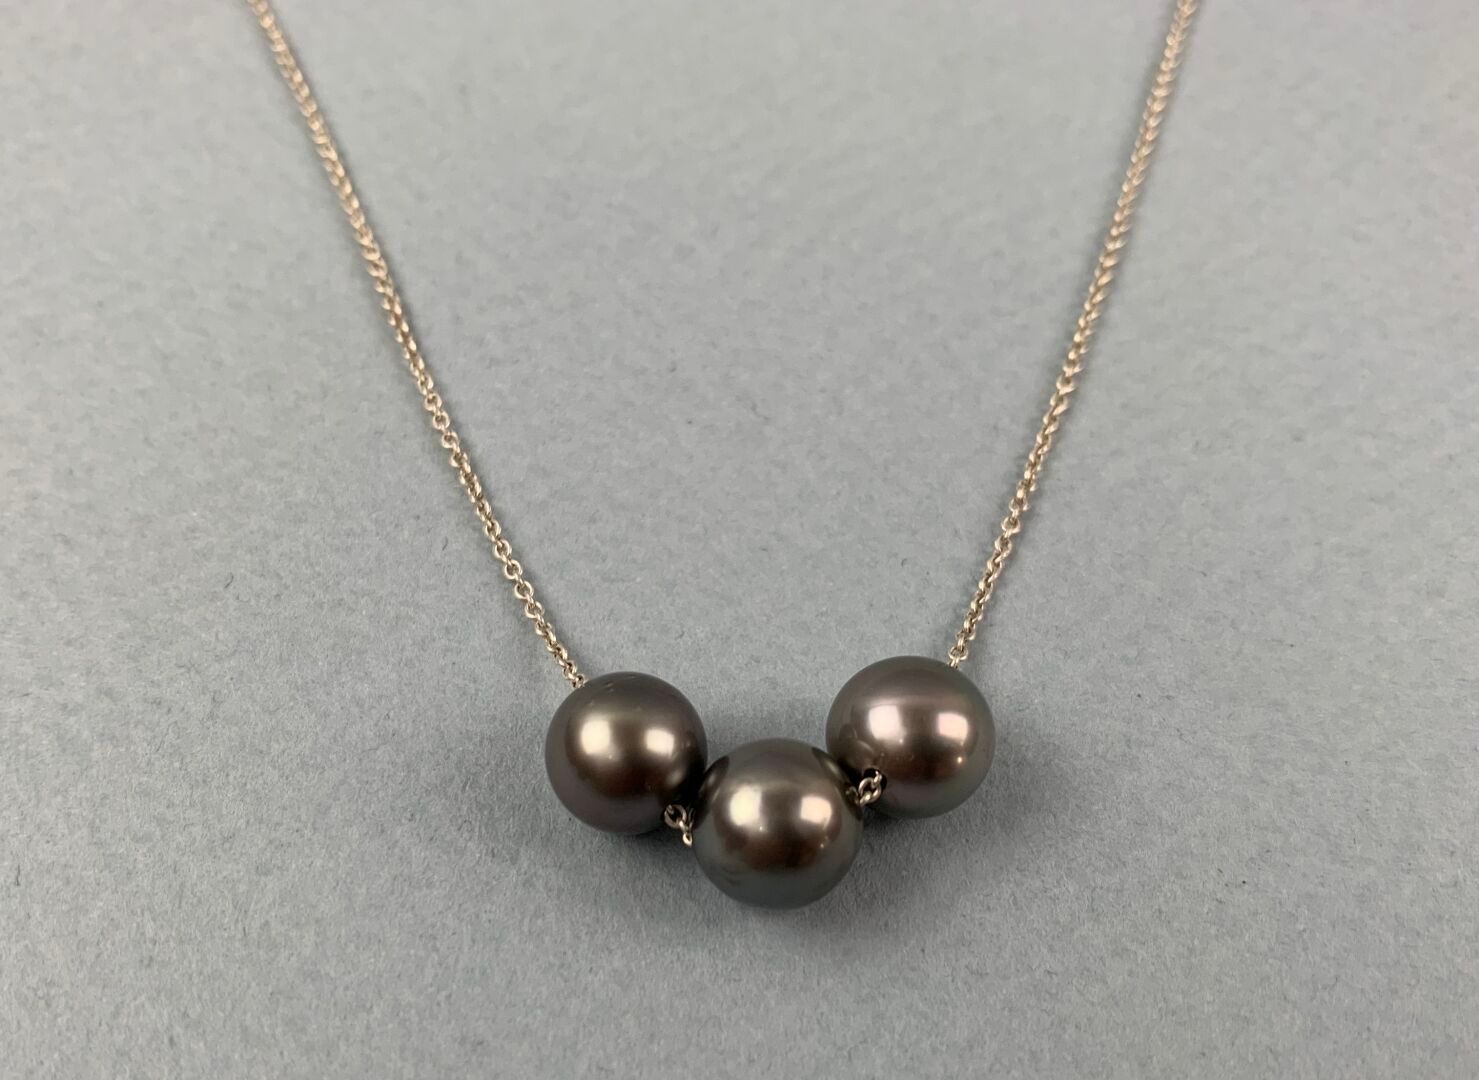 Null 由3颗大溪地珍珠组成的项链，口径8/9，安装在银链上（925千分之一）。
毛重 : 4,4 g